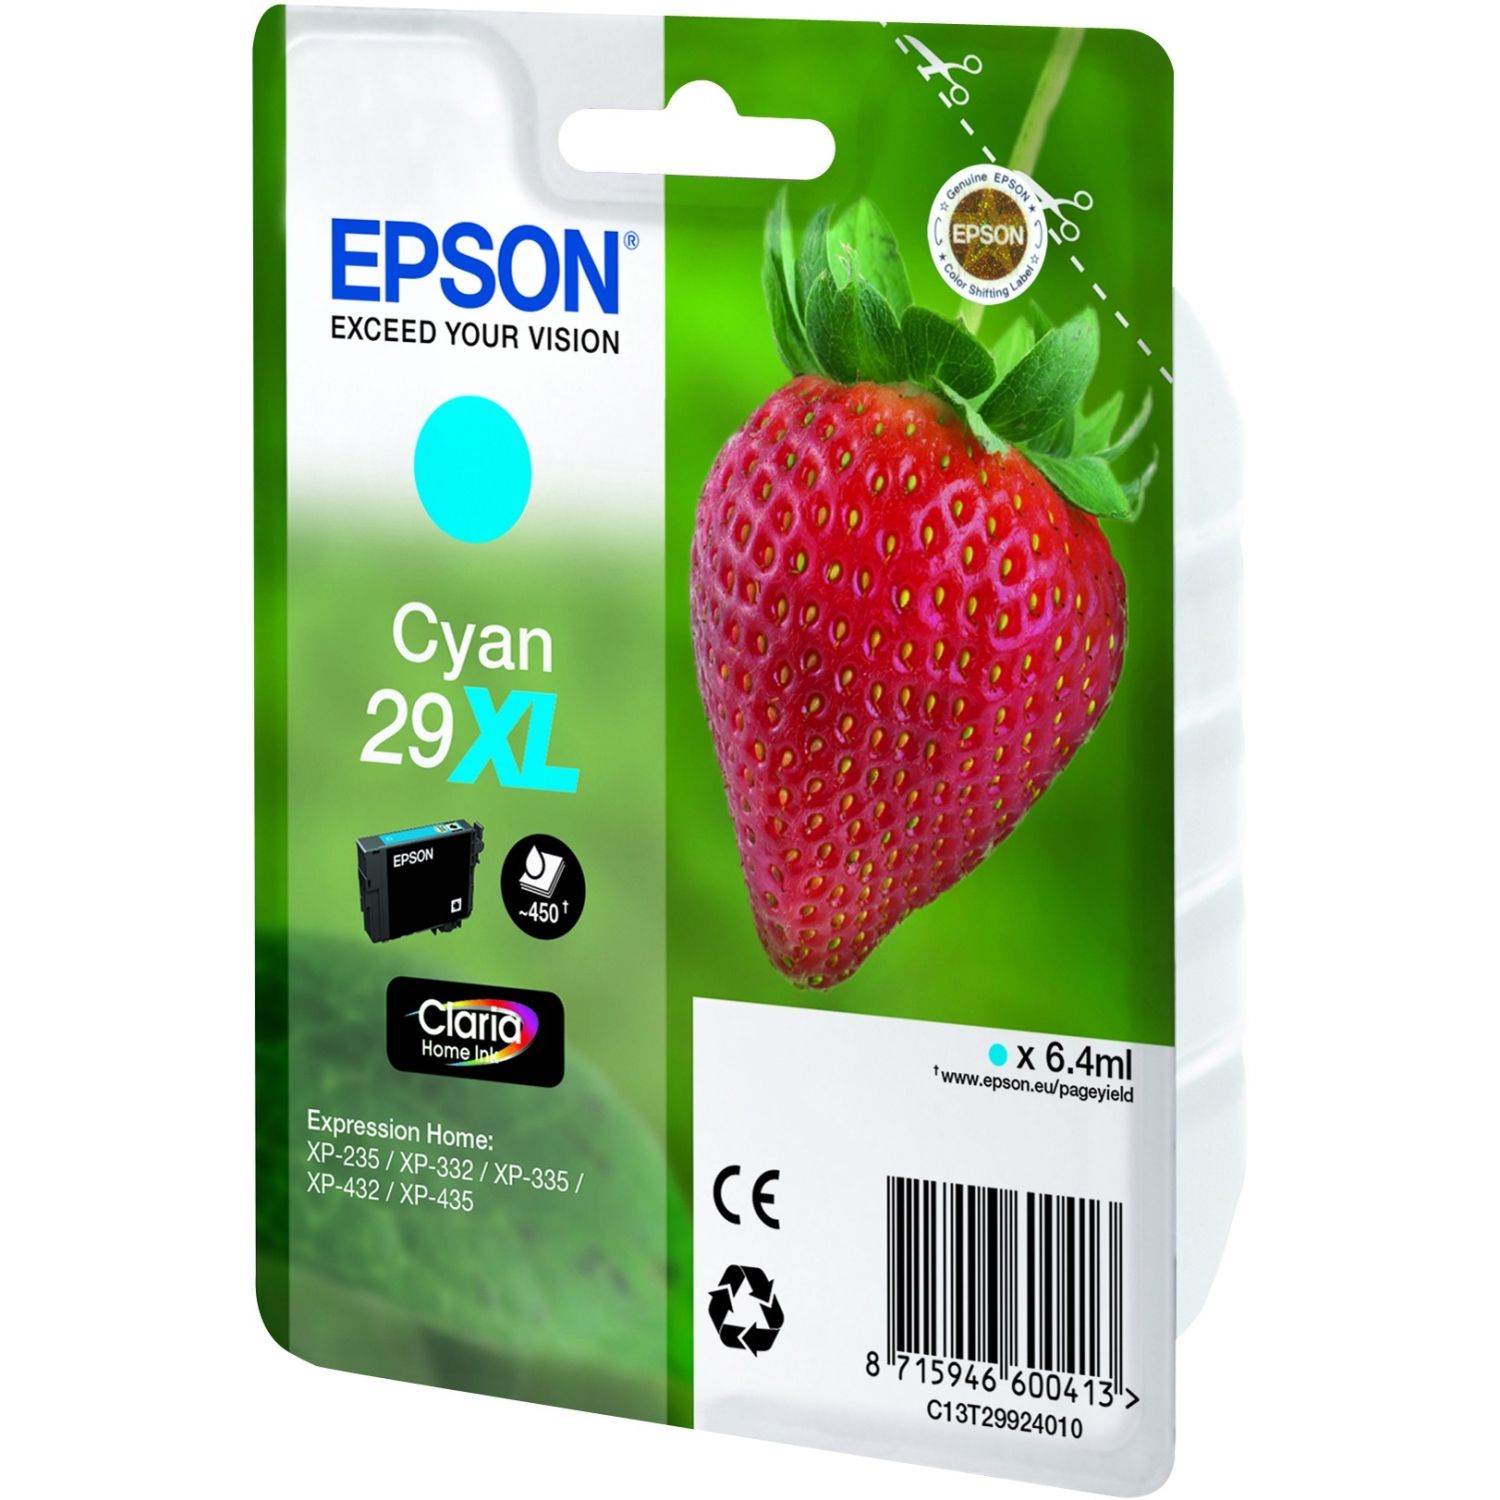 Epson-29Xl-cian-tinta-original